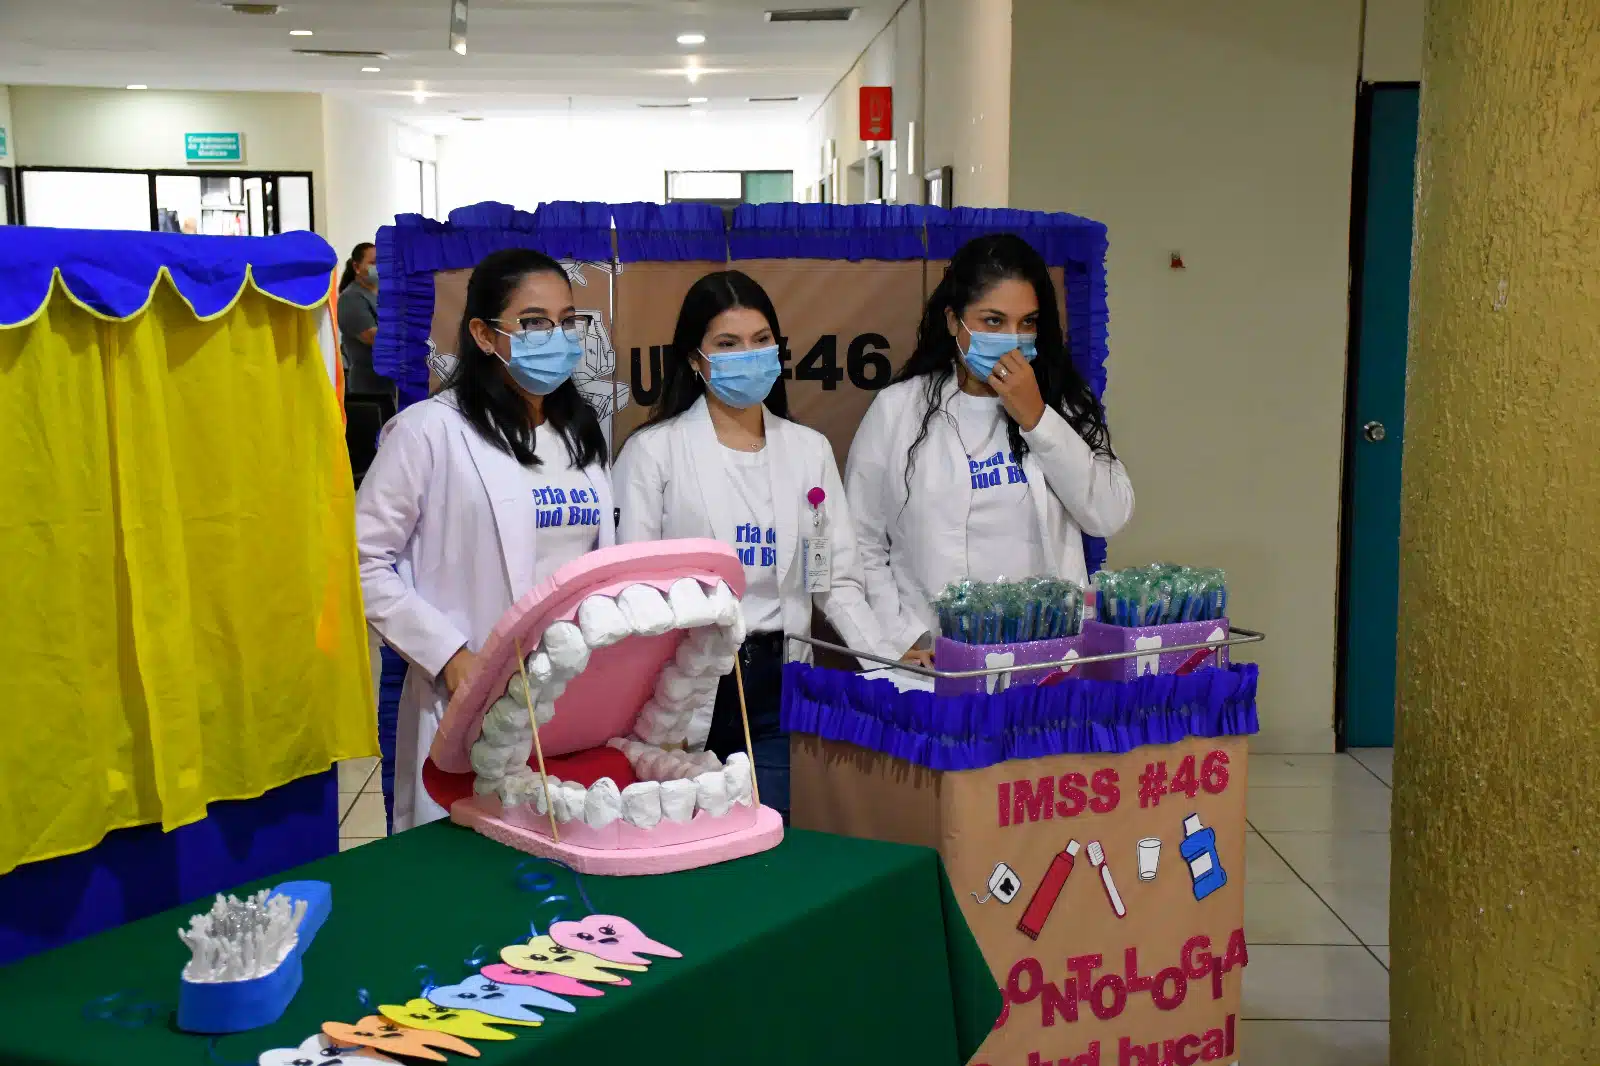 Salud Bucal jornada prevención IMSS Sinaloa